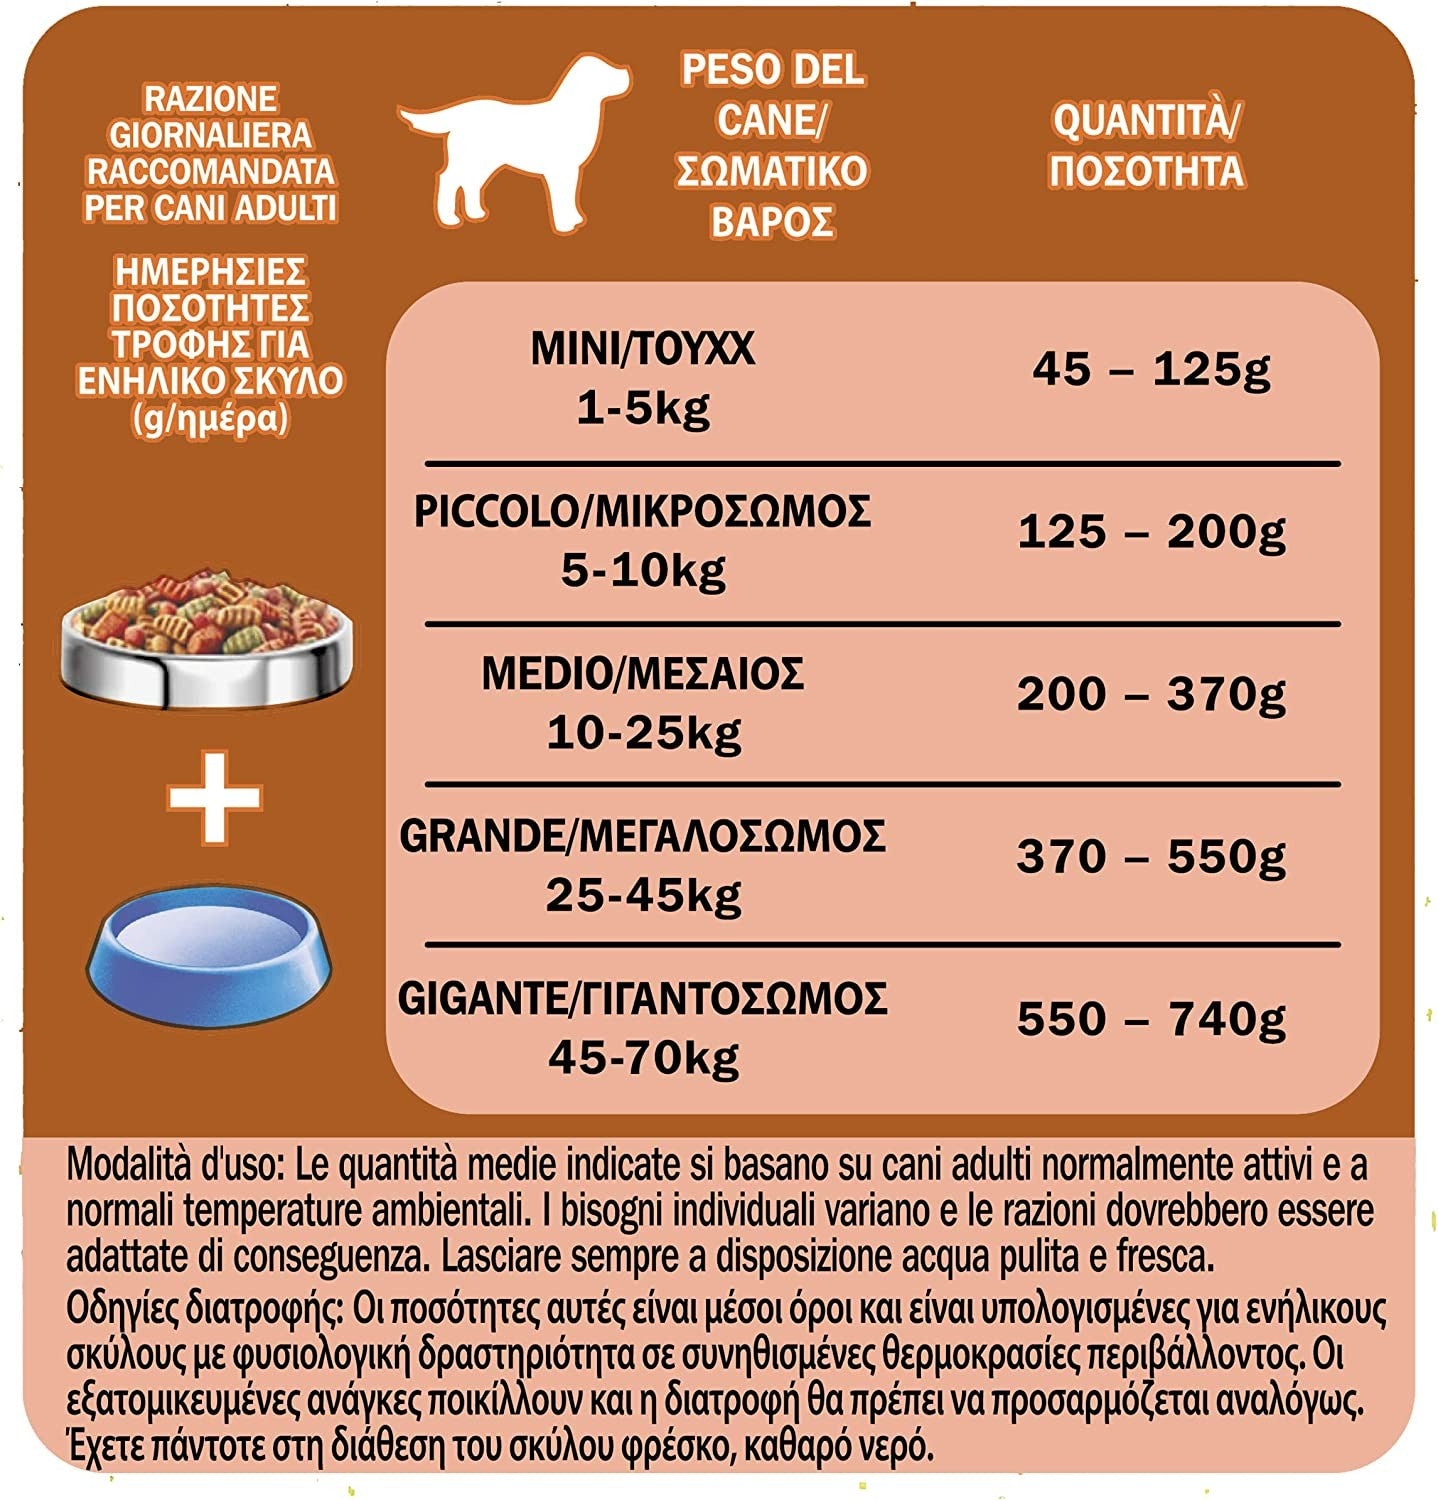 PURINA FRISKIES Crocchette Cane Vitafit Nutri Soft con Pollo, 6 sacchi da 1.5 kg ciascuno